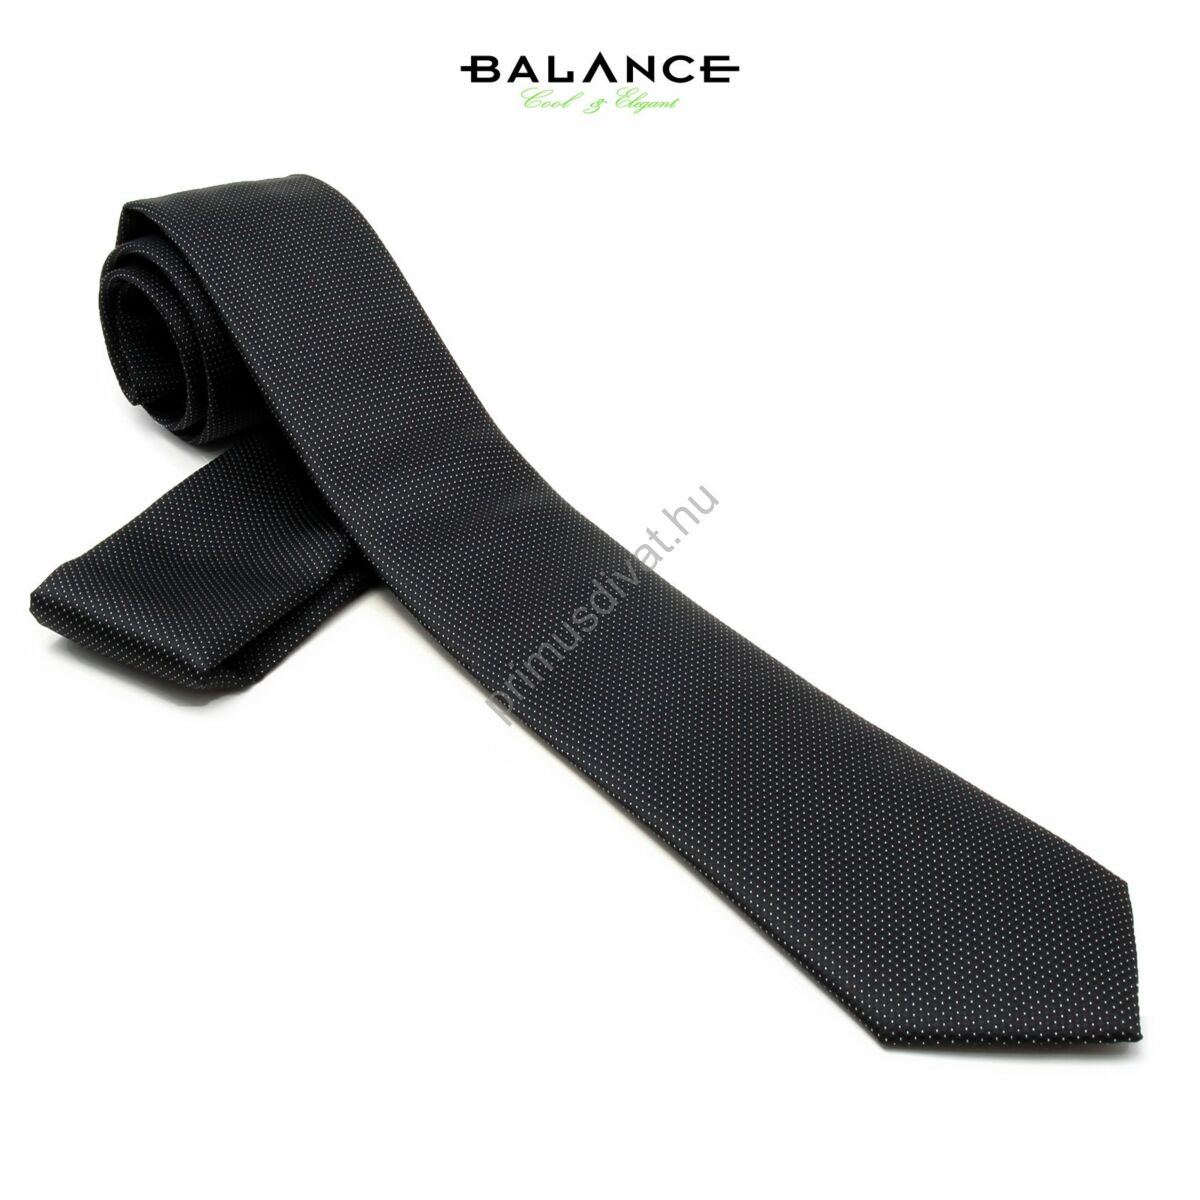 Balance apró fehér pöttyös fekete keskeny selyem nyakkendő díszzsebkendővel